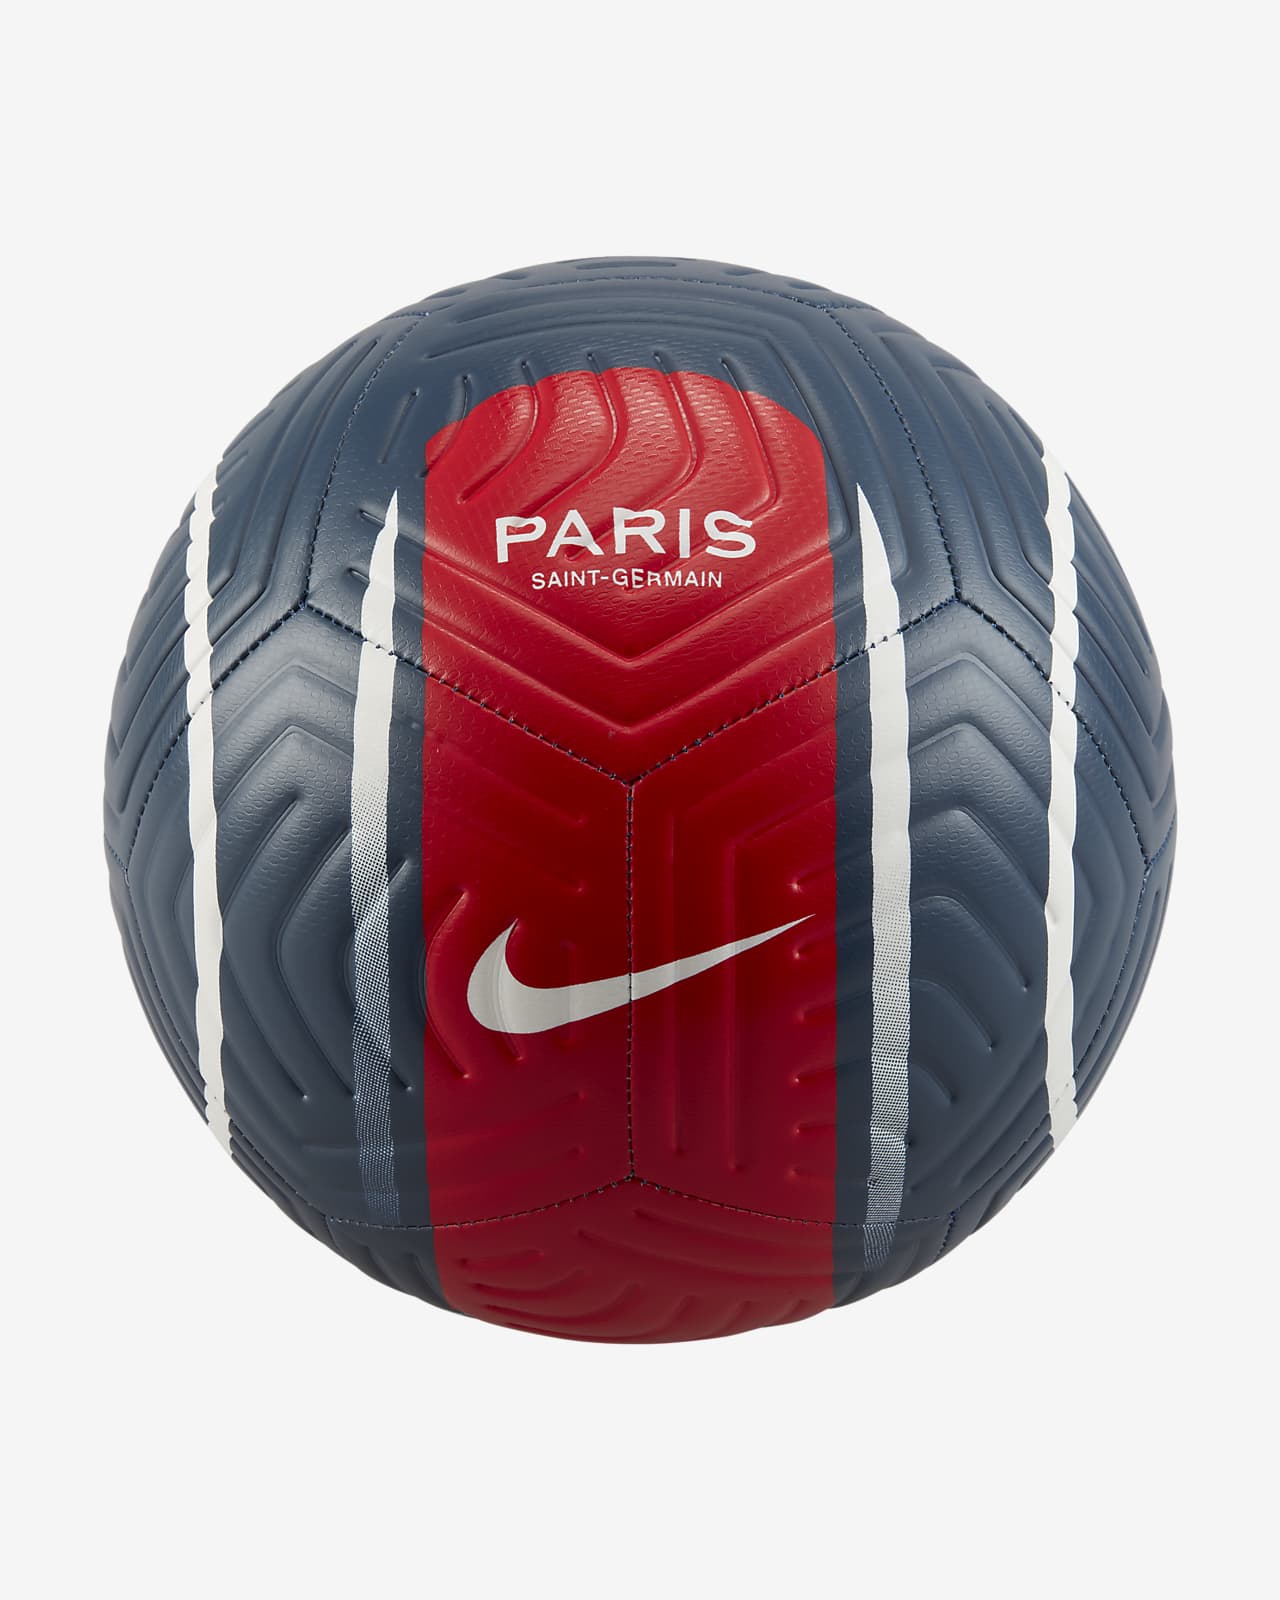 Desacuerdo cafetería barato Ballon de football Paris Saint-Germain Strike. Nike FR